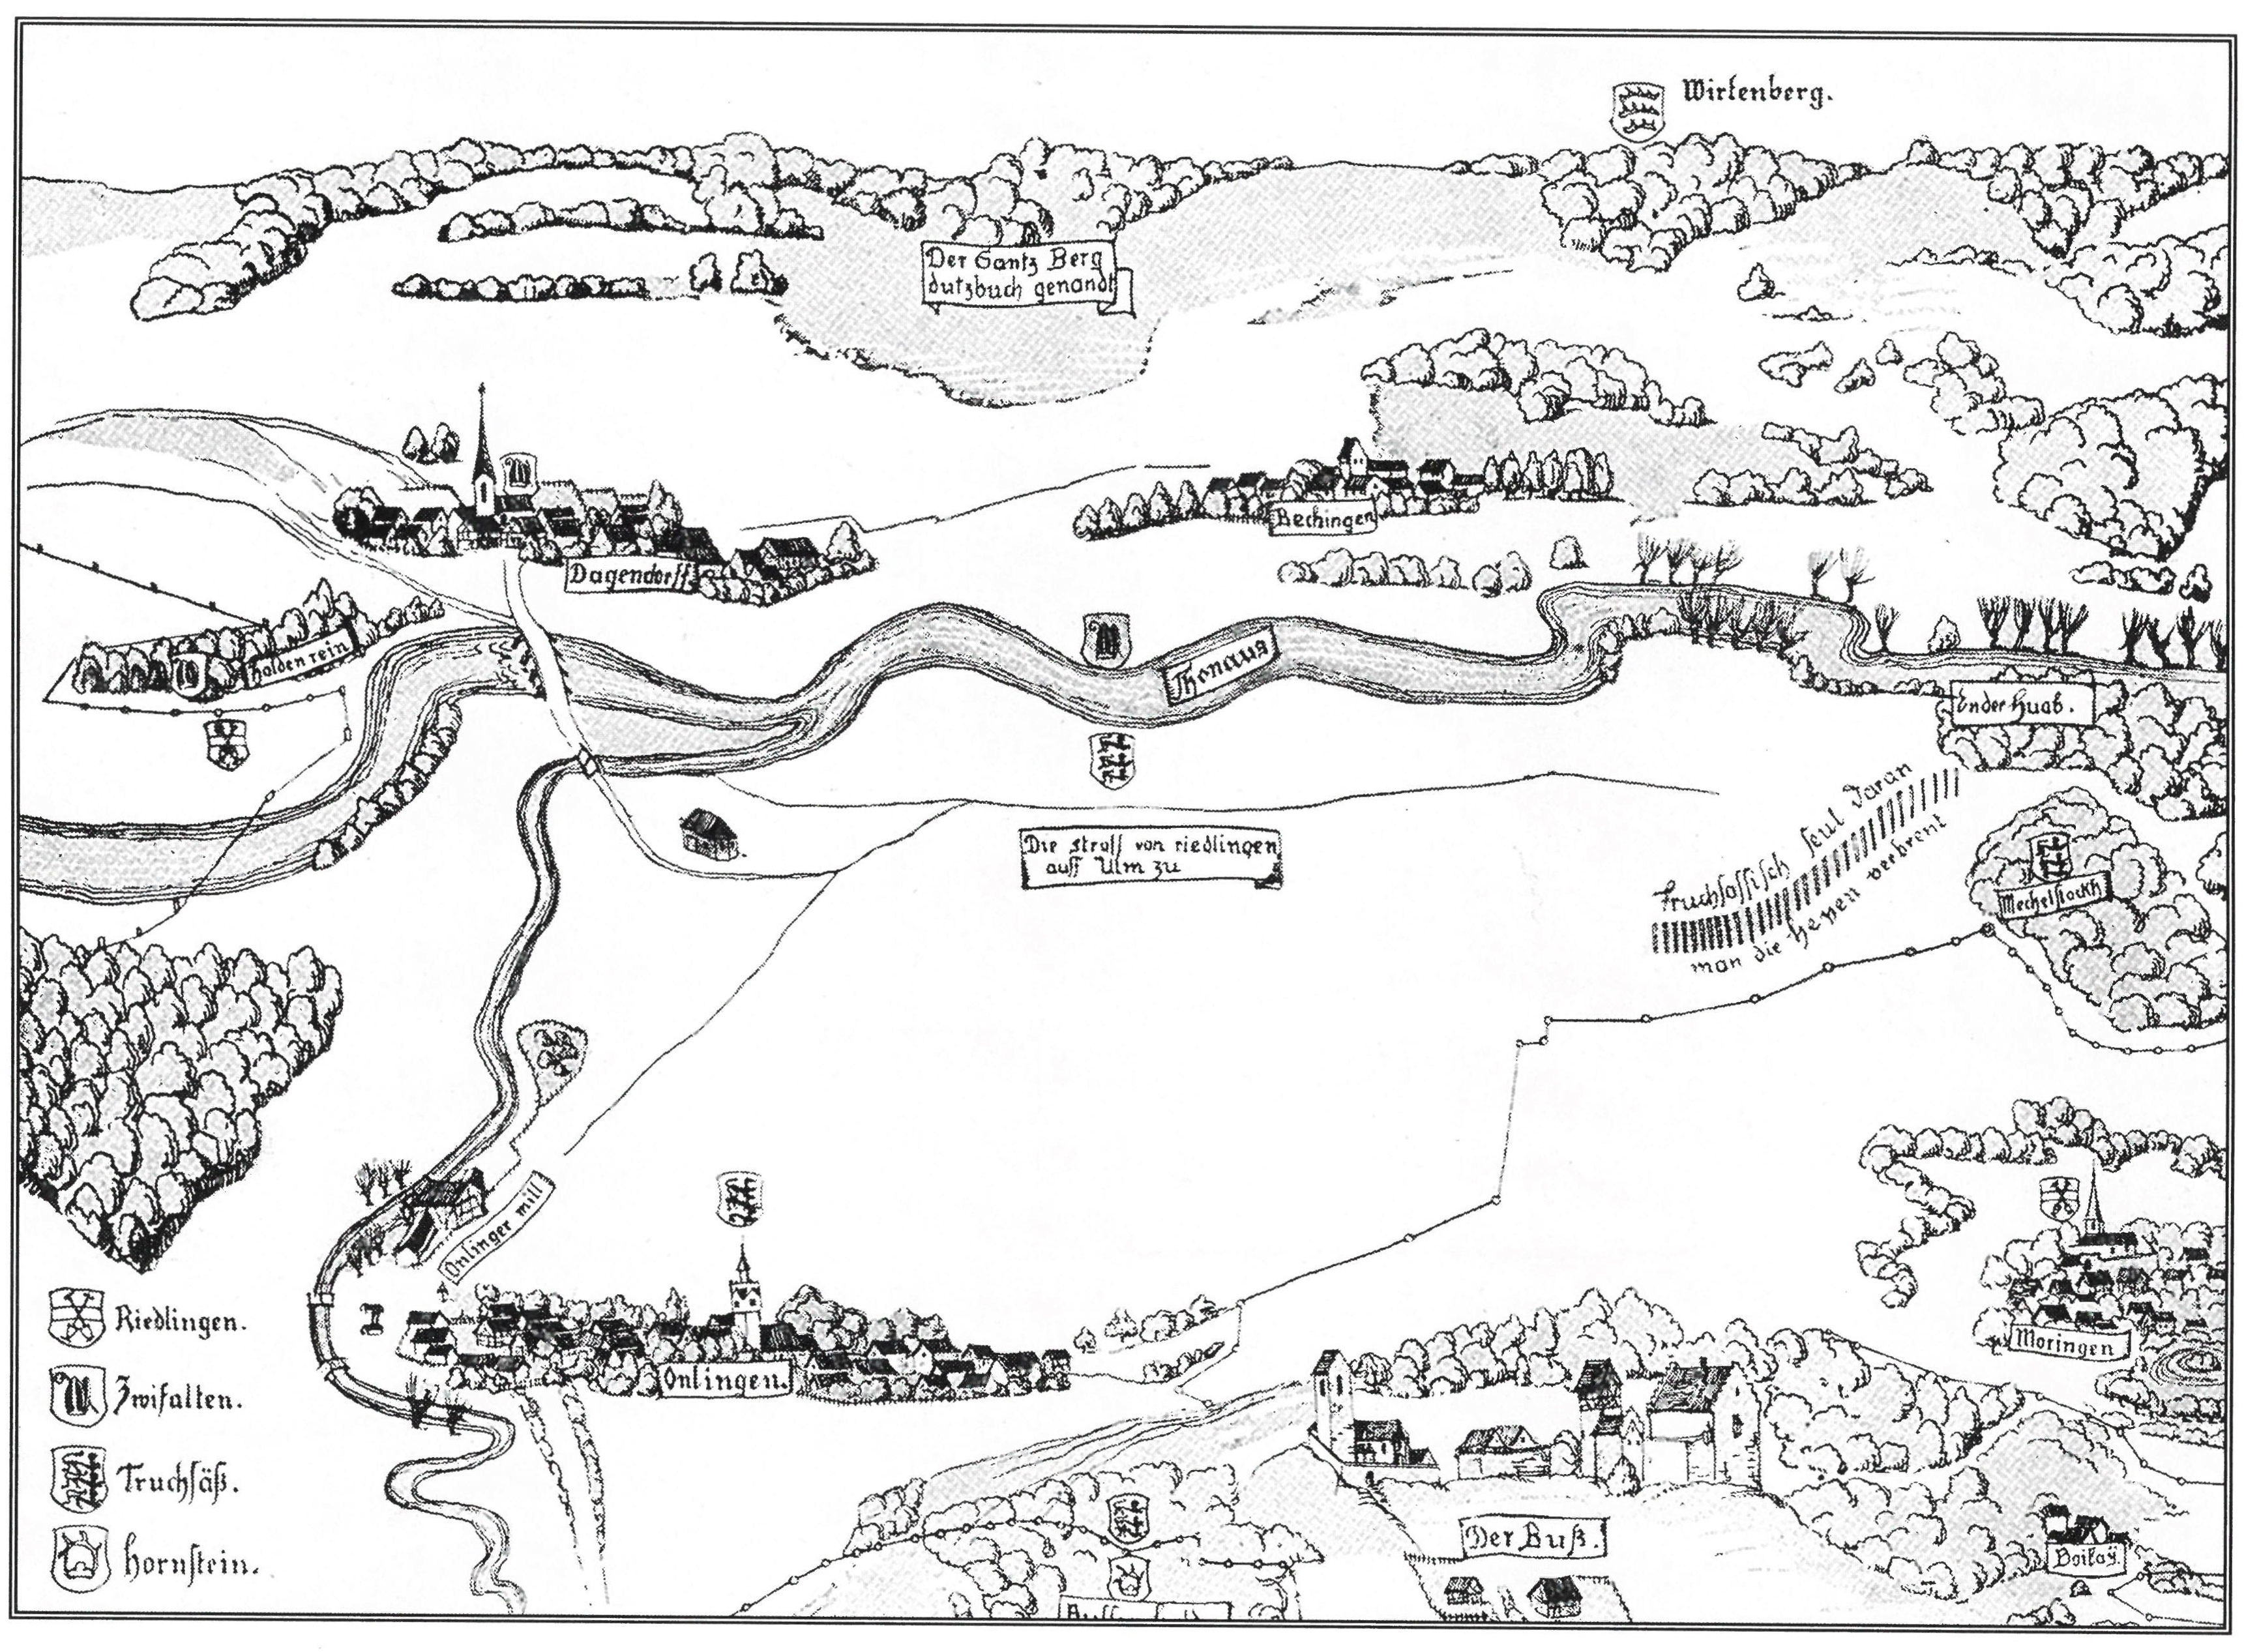  Unlingen im Jahr 1590. Nördlich von Unlingen vor dem Wald die Hexensäulen; nach der Reulin'schen Karte. 